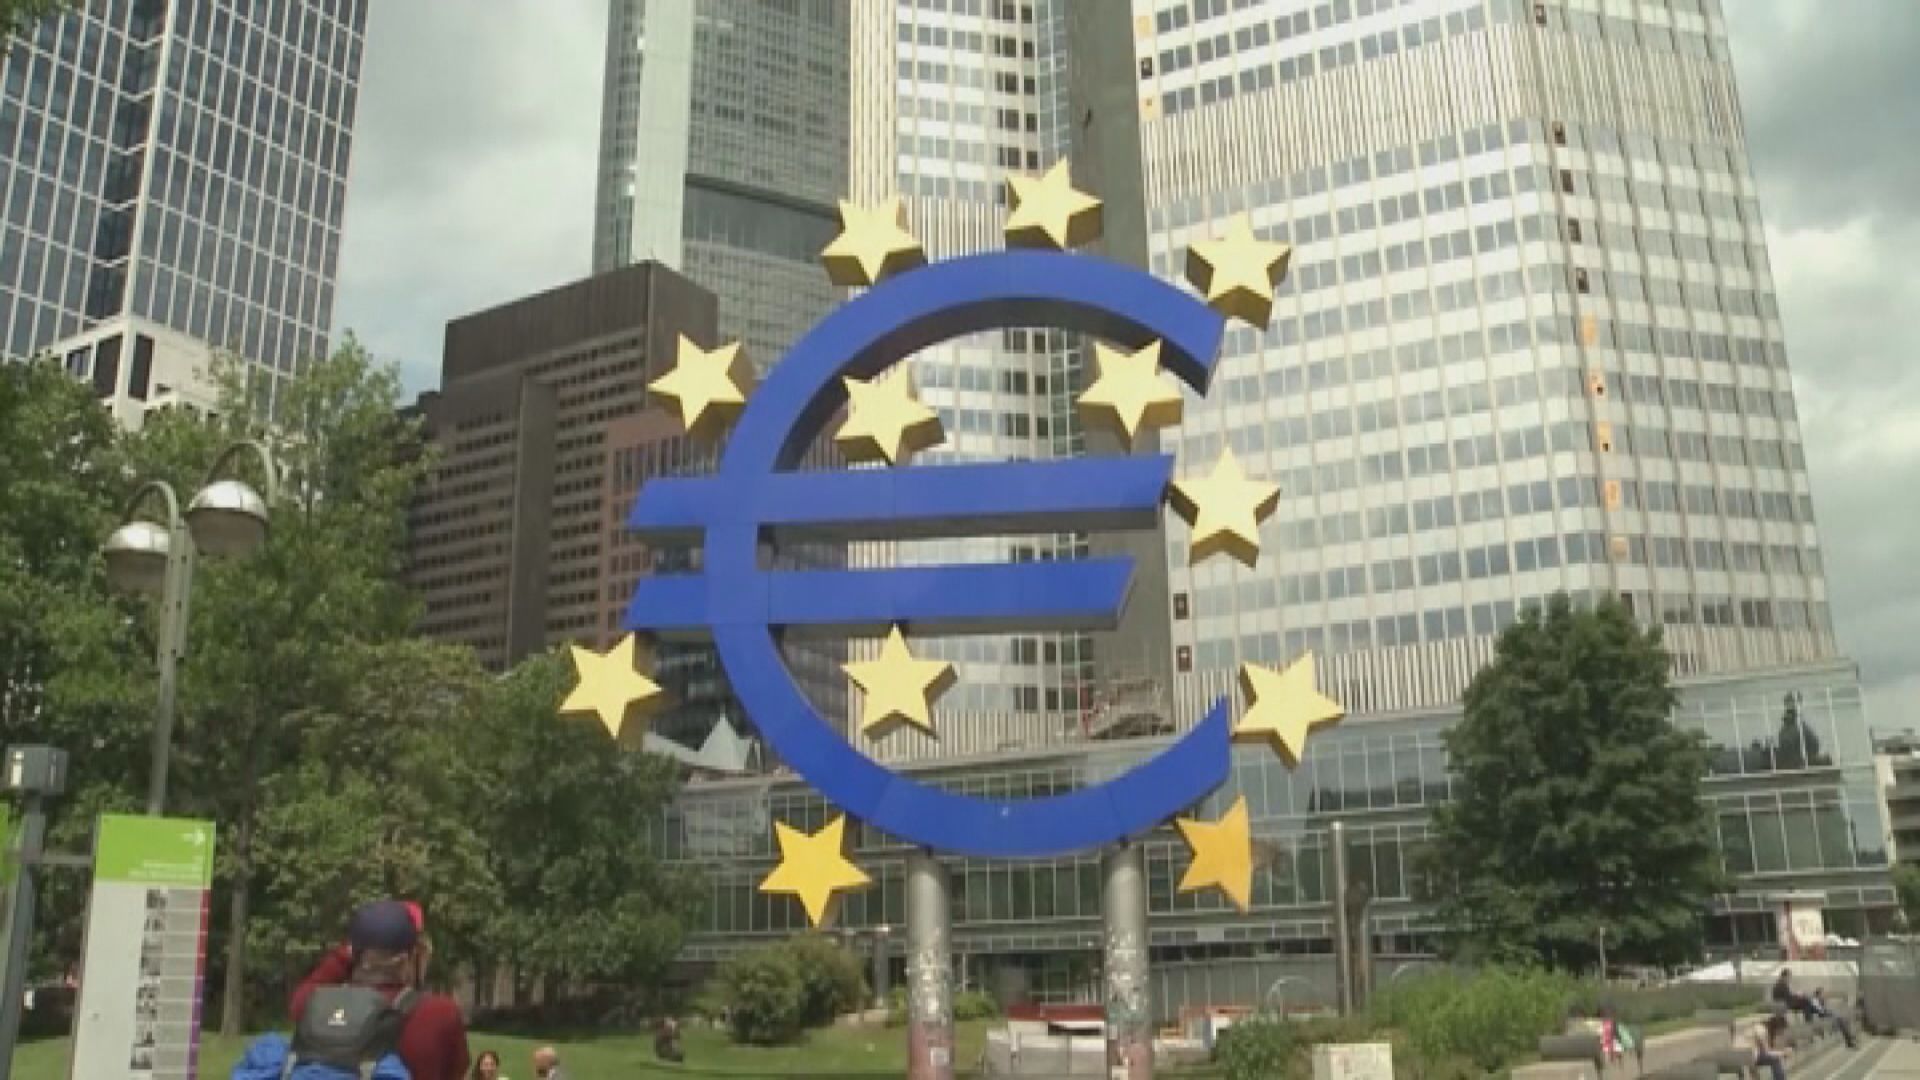 【繼續加息】歐央行管委:ECB須盡力實現通脹目標